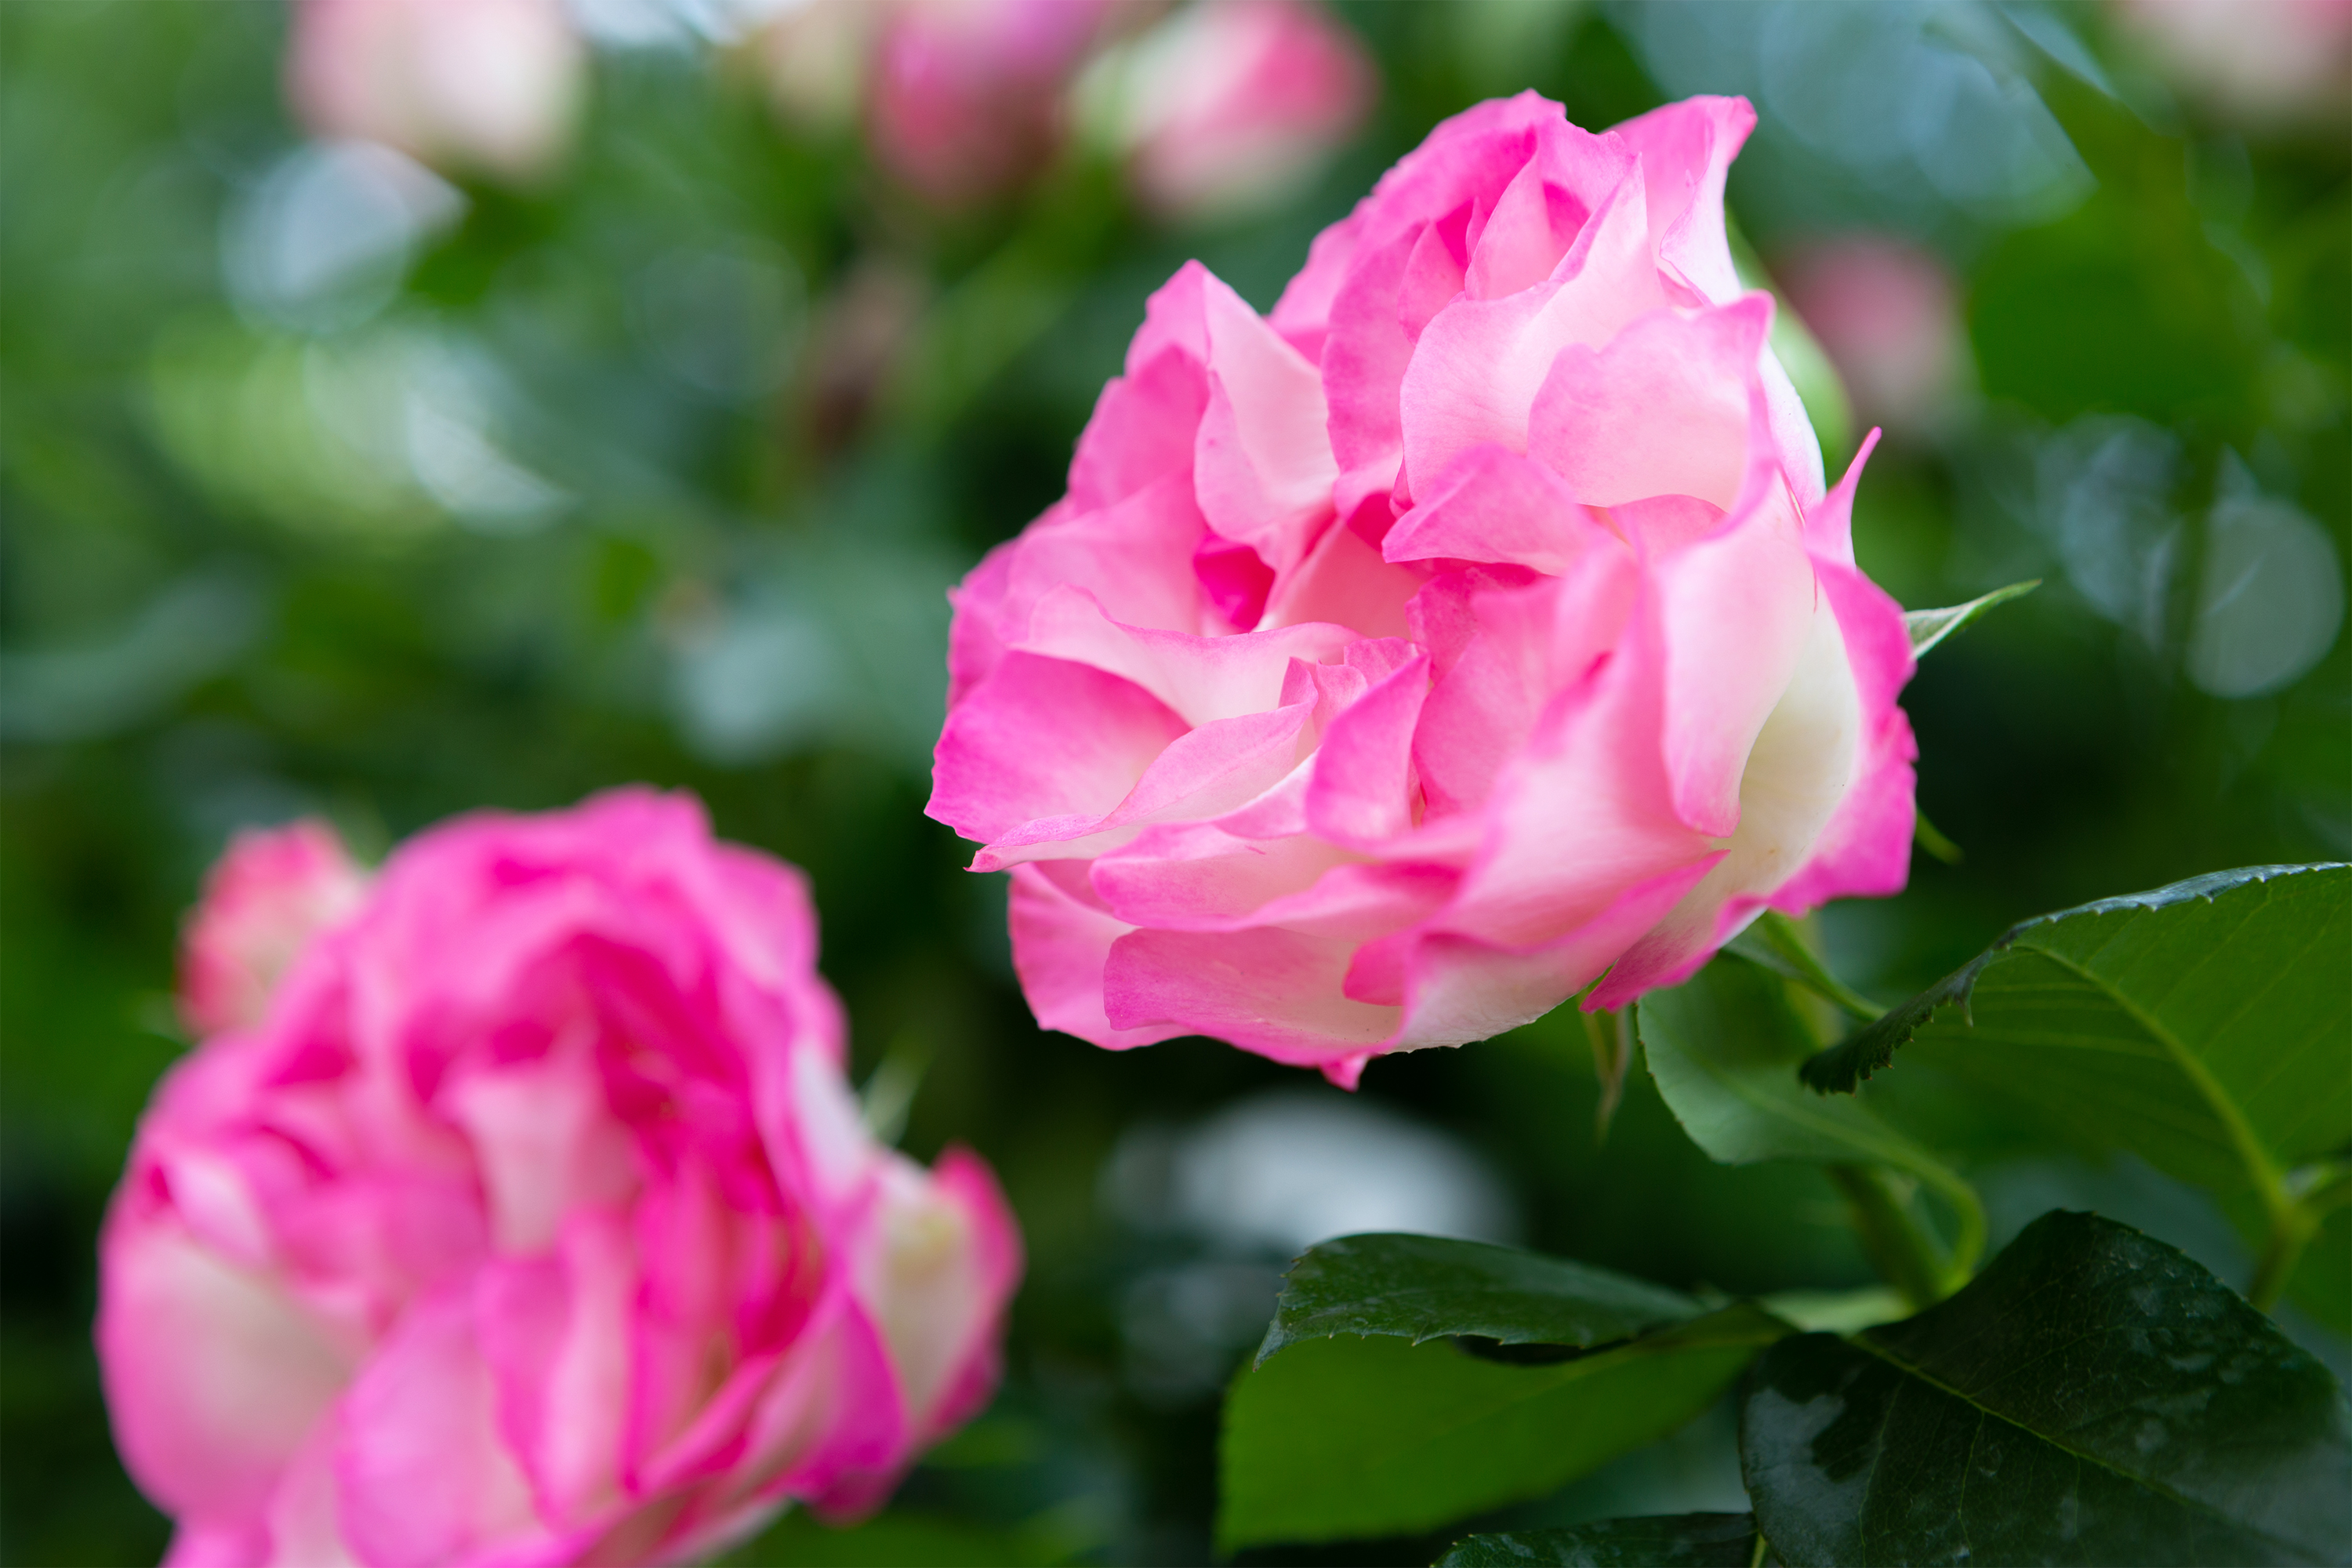 白とピンク色のバラ 薔薇 02 無料の高画質フリー写真素材 イメージズラボ